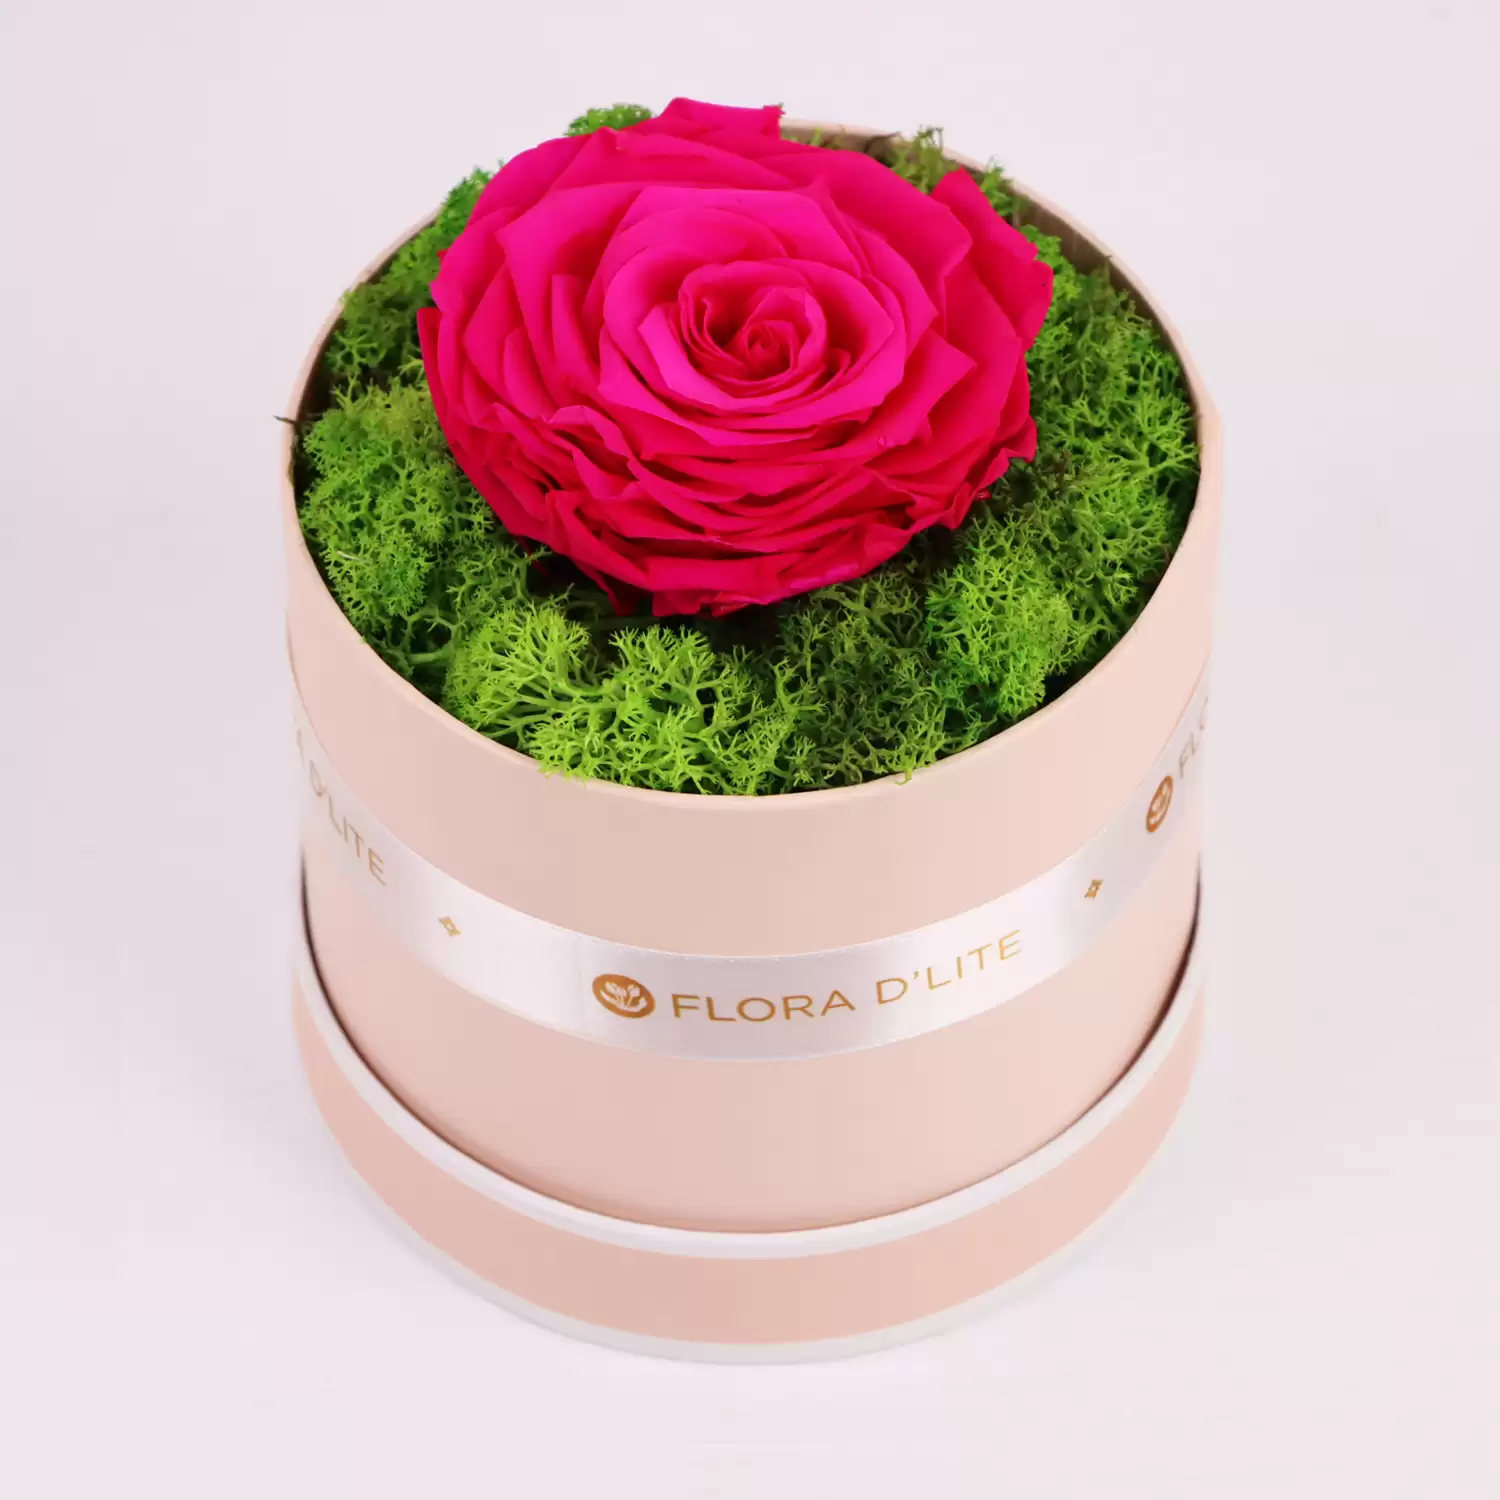 Jumbo Infinity Rose | Gift Jumbo Preserved Roses Online - Flora D'lite